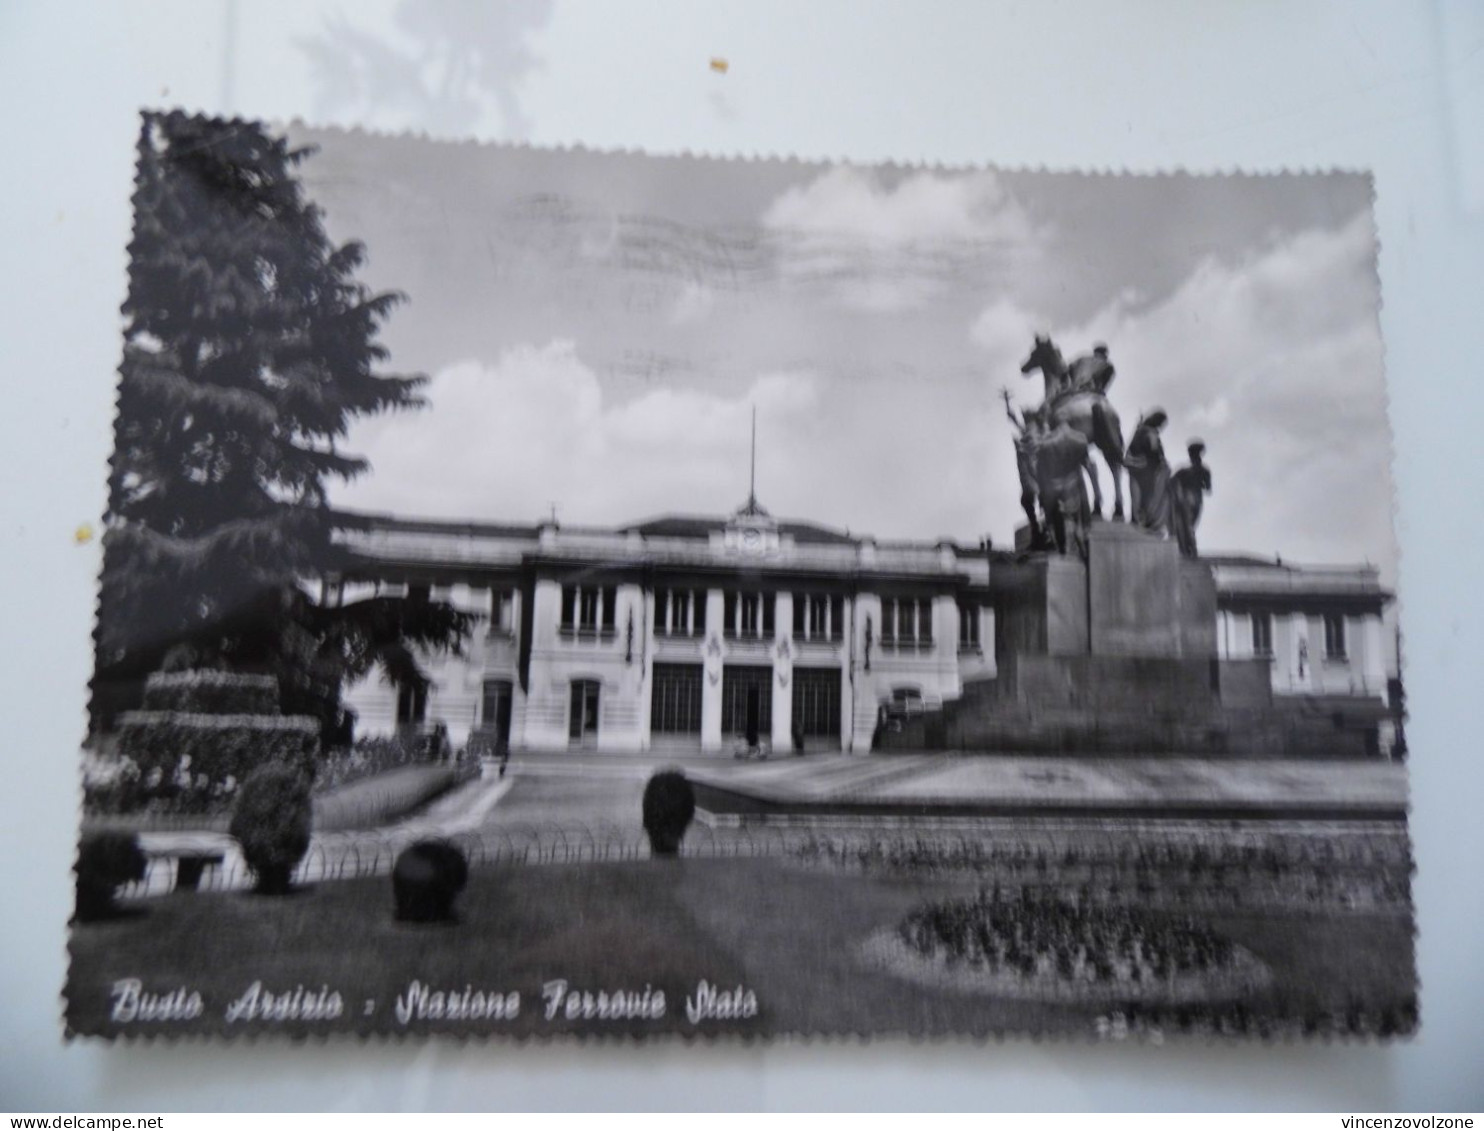 Cartolina Viaggiata "BUSTO ARSIZIO Stazione Ferrovie Stato" 1958 - Busto Arsizio